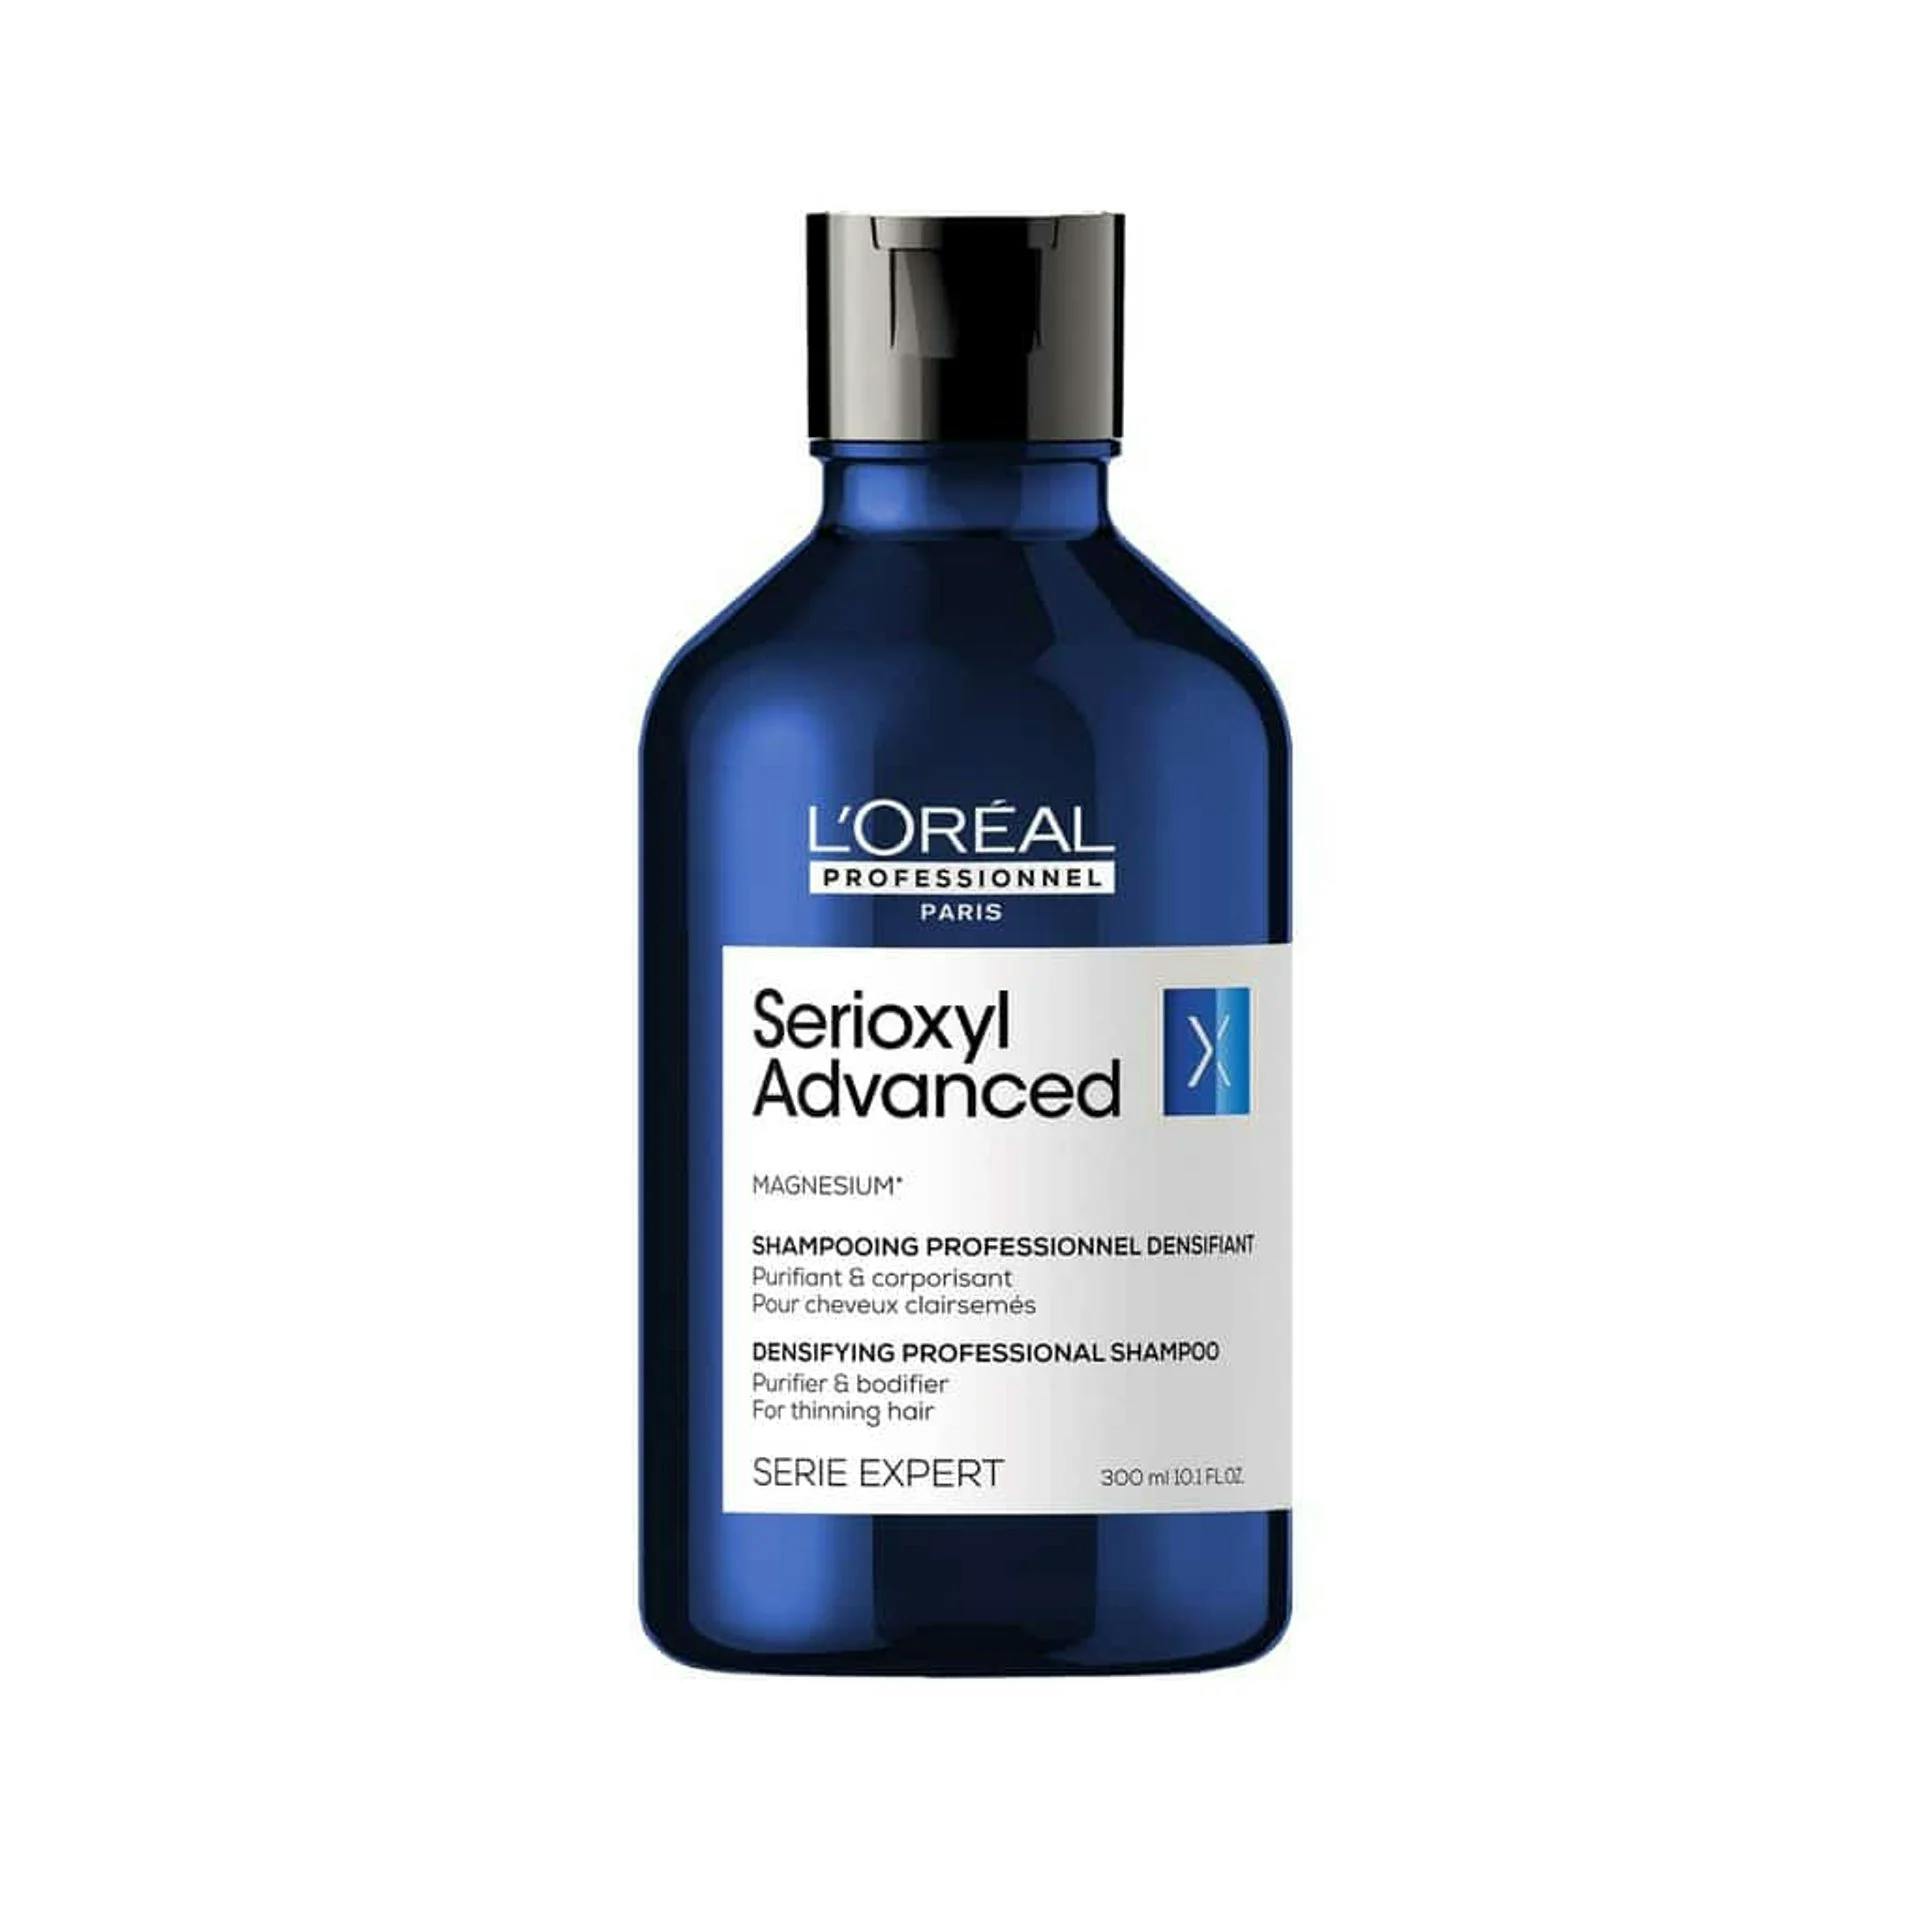 L'Oreal Professionnel Serioxyl Advanced Densifying Professional Shampoo Професійний шампунь для зміцнення тонкого волосся